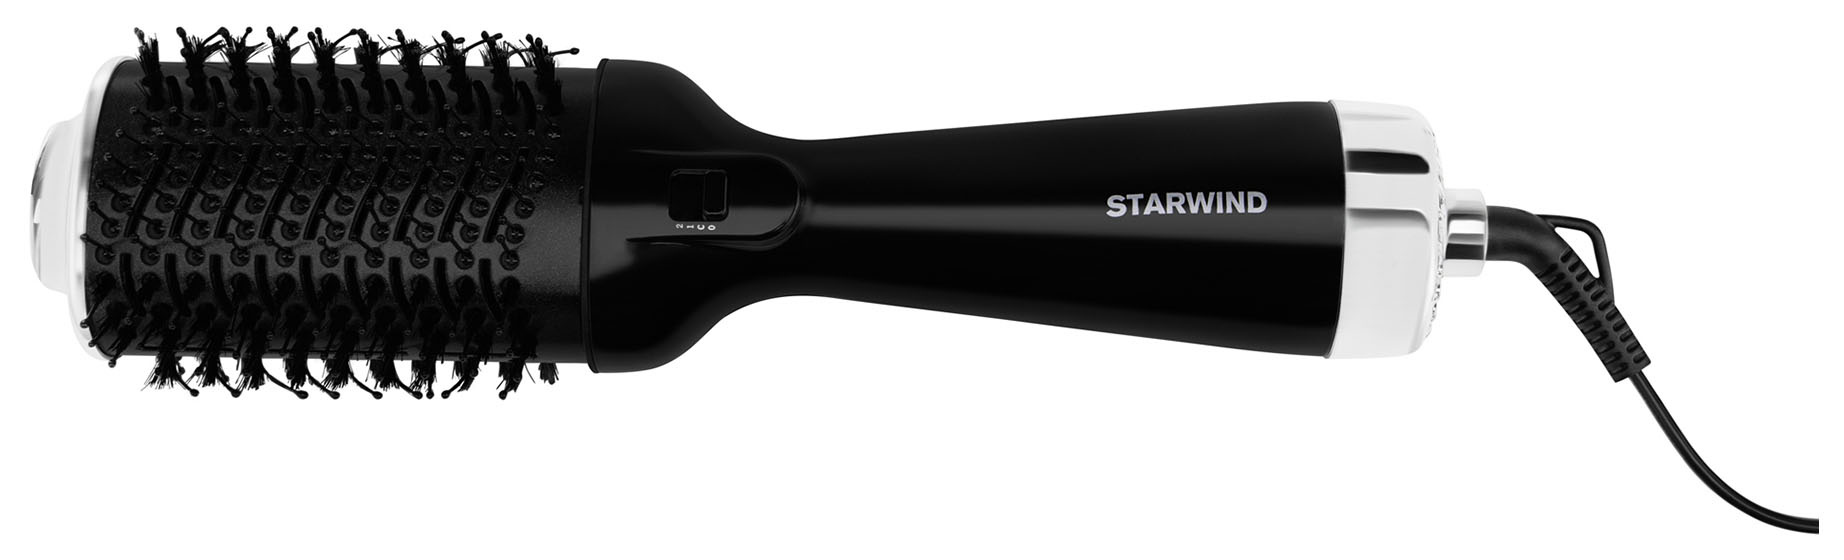 Фен-щетка Starwind SHB 7760 1200Вт белый/фиолетовый